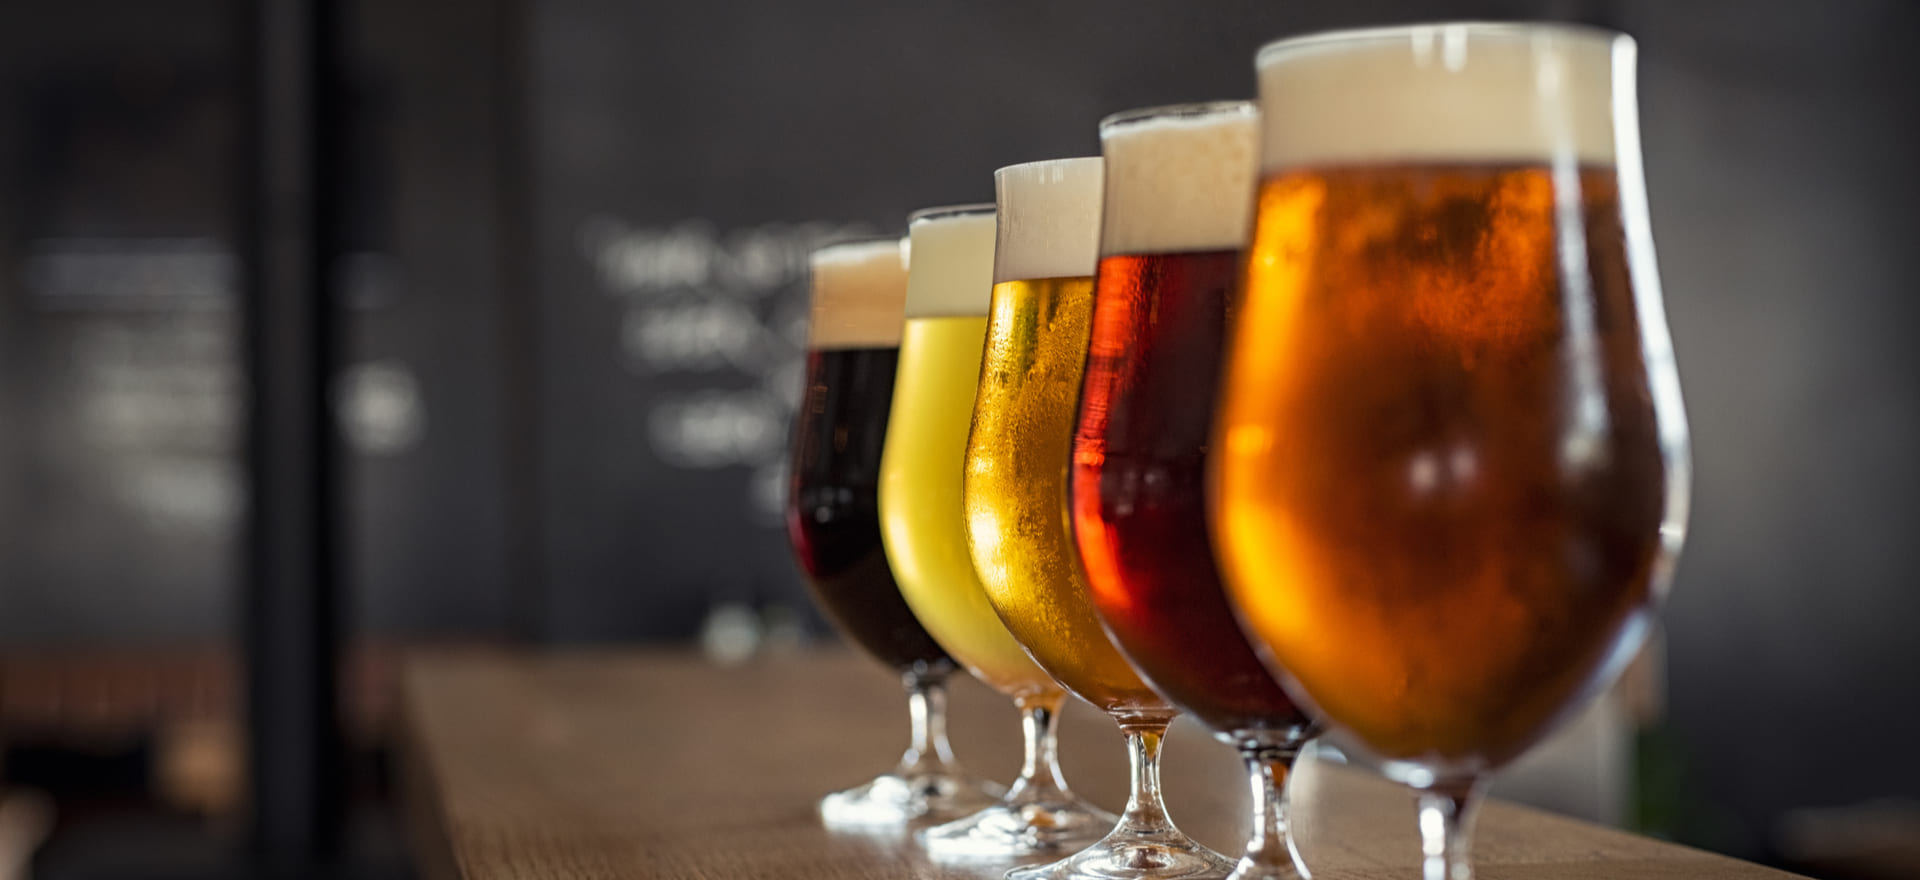 Вред пива для мужчин: влияние напитка на организм